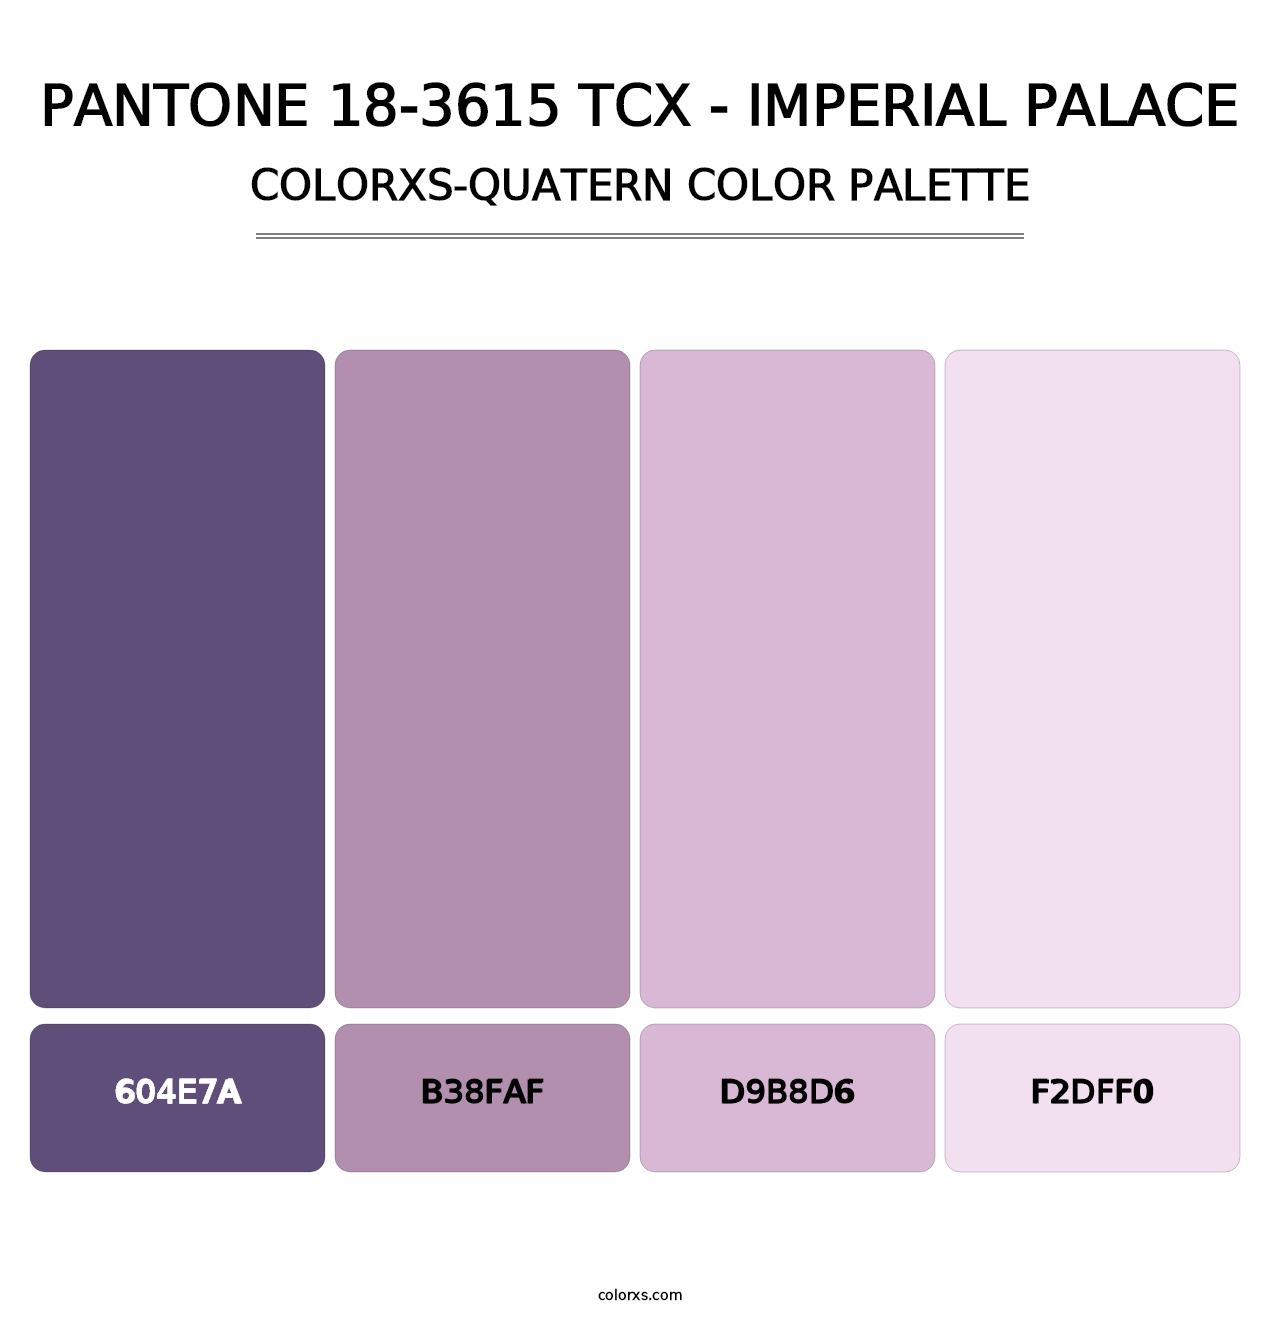 PANTONE 18-3615 TCX - Imperial Palace - Colorxs Quatern Palette